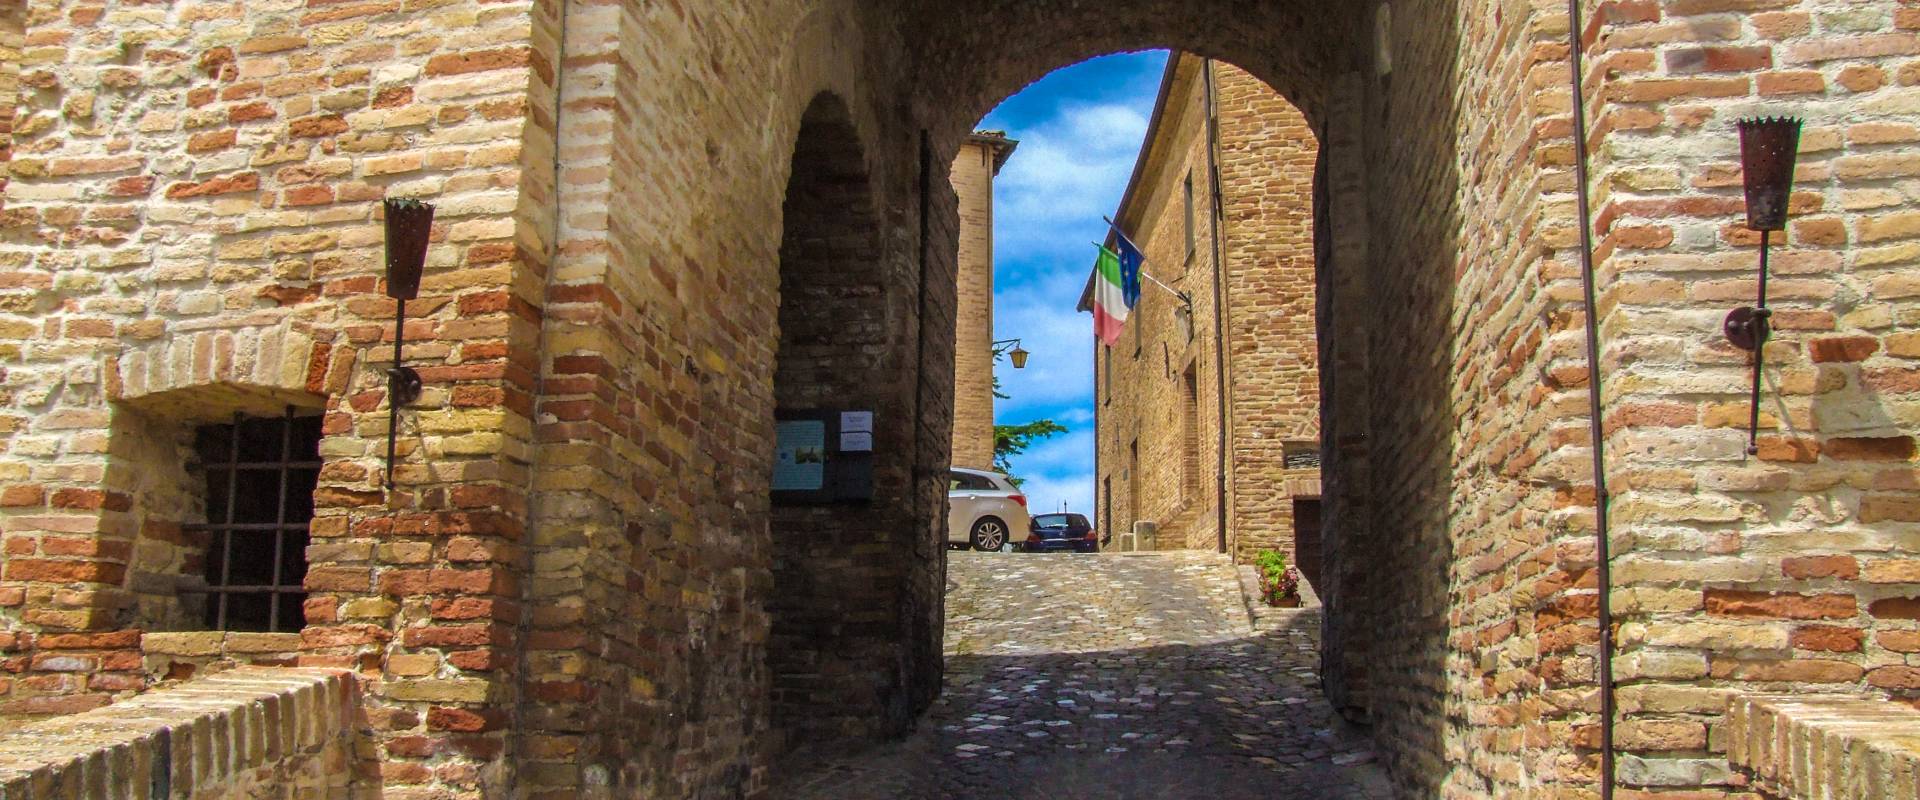 Porta del Castello - Montegridolfo 3 foto di Diego Baglieri